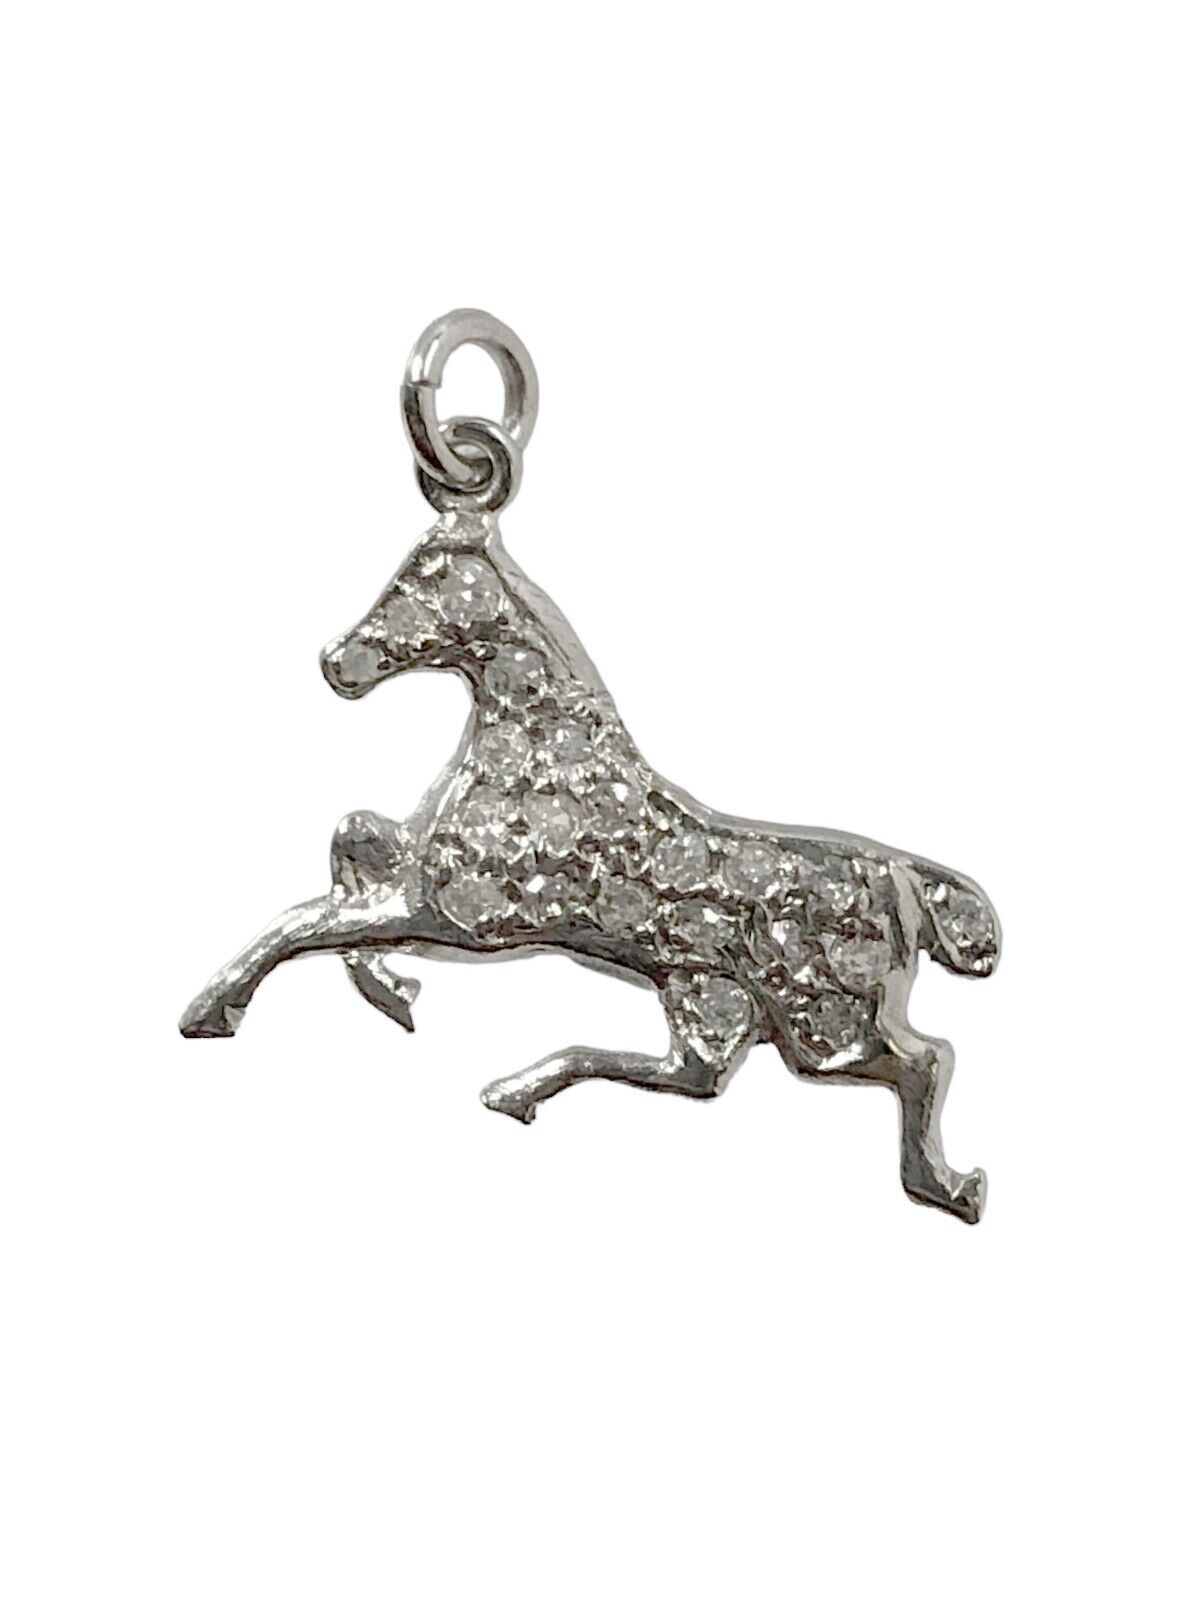 ANTIQUE ART DECO PLATINUM DIAMOND HORSE CHARM - image 1